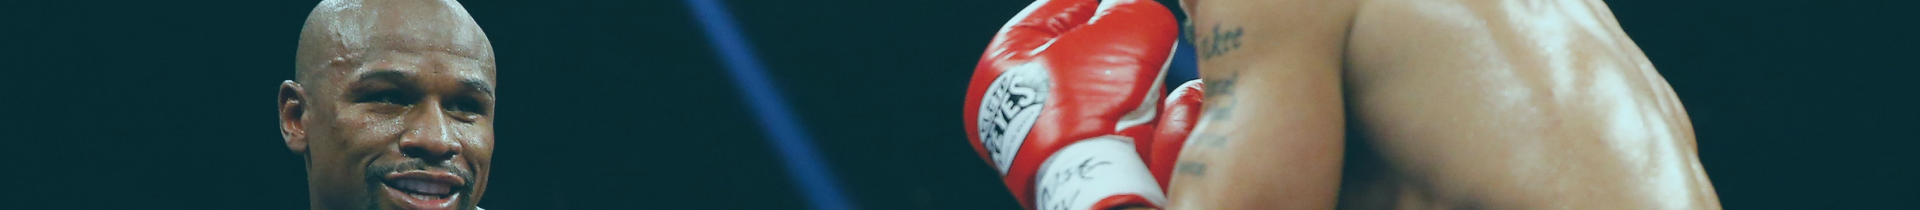 Signed Floyd Mayweather Boxing Gloves